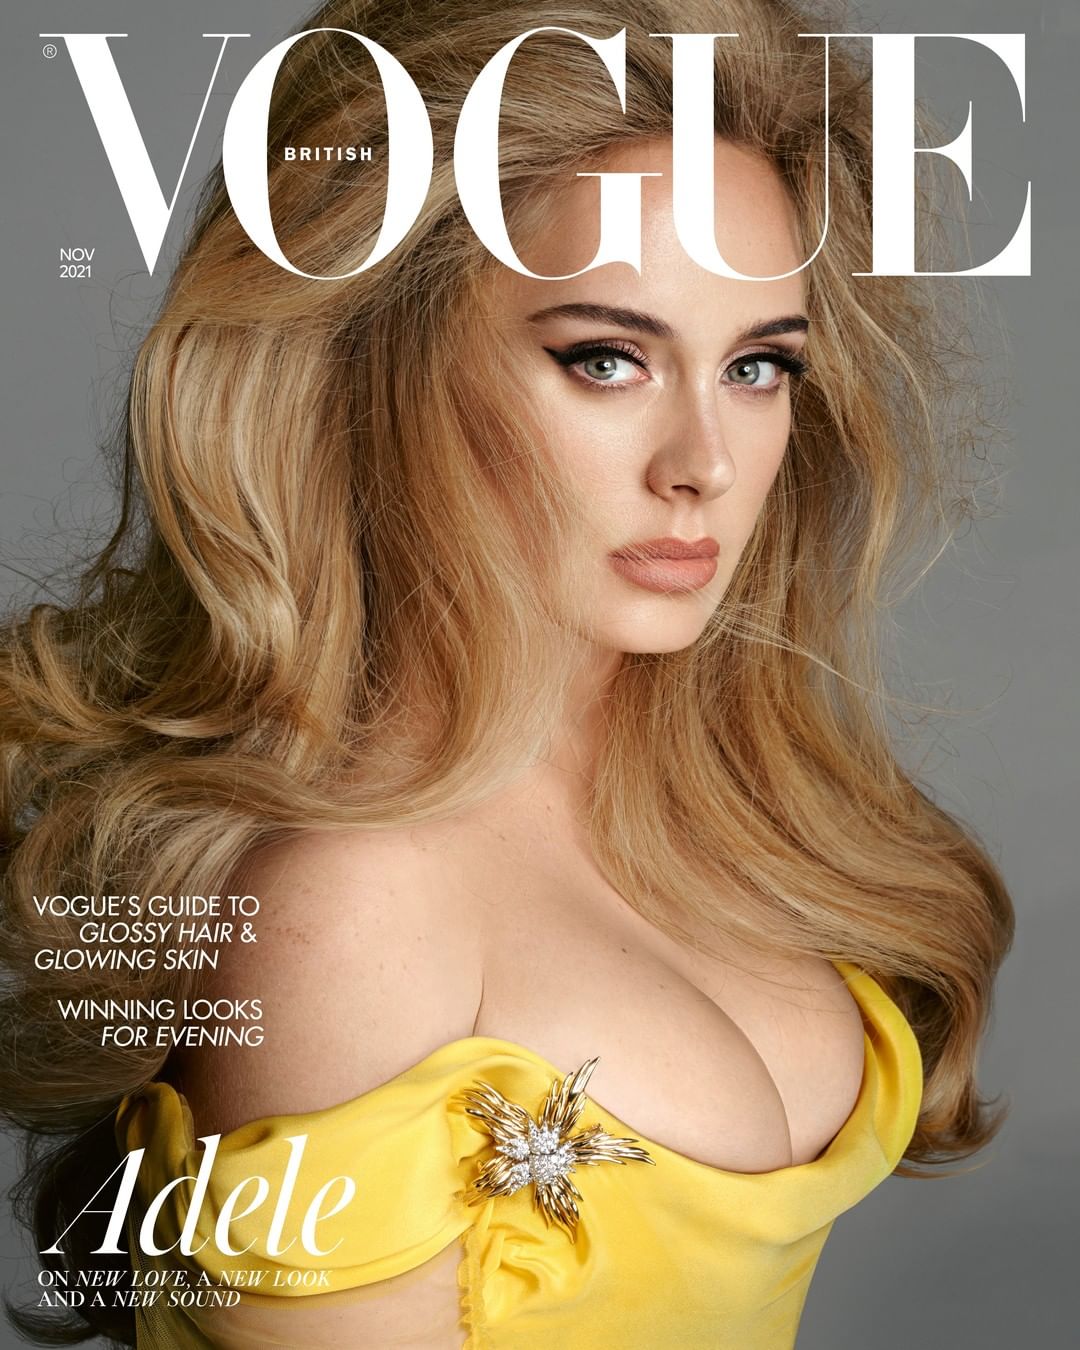 Informe AR: La defensa de Shakira y el regreso de Adele